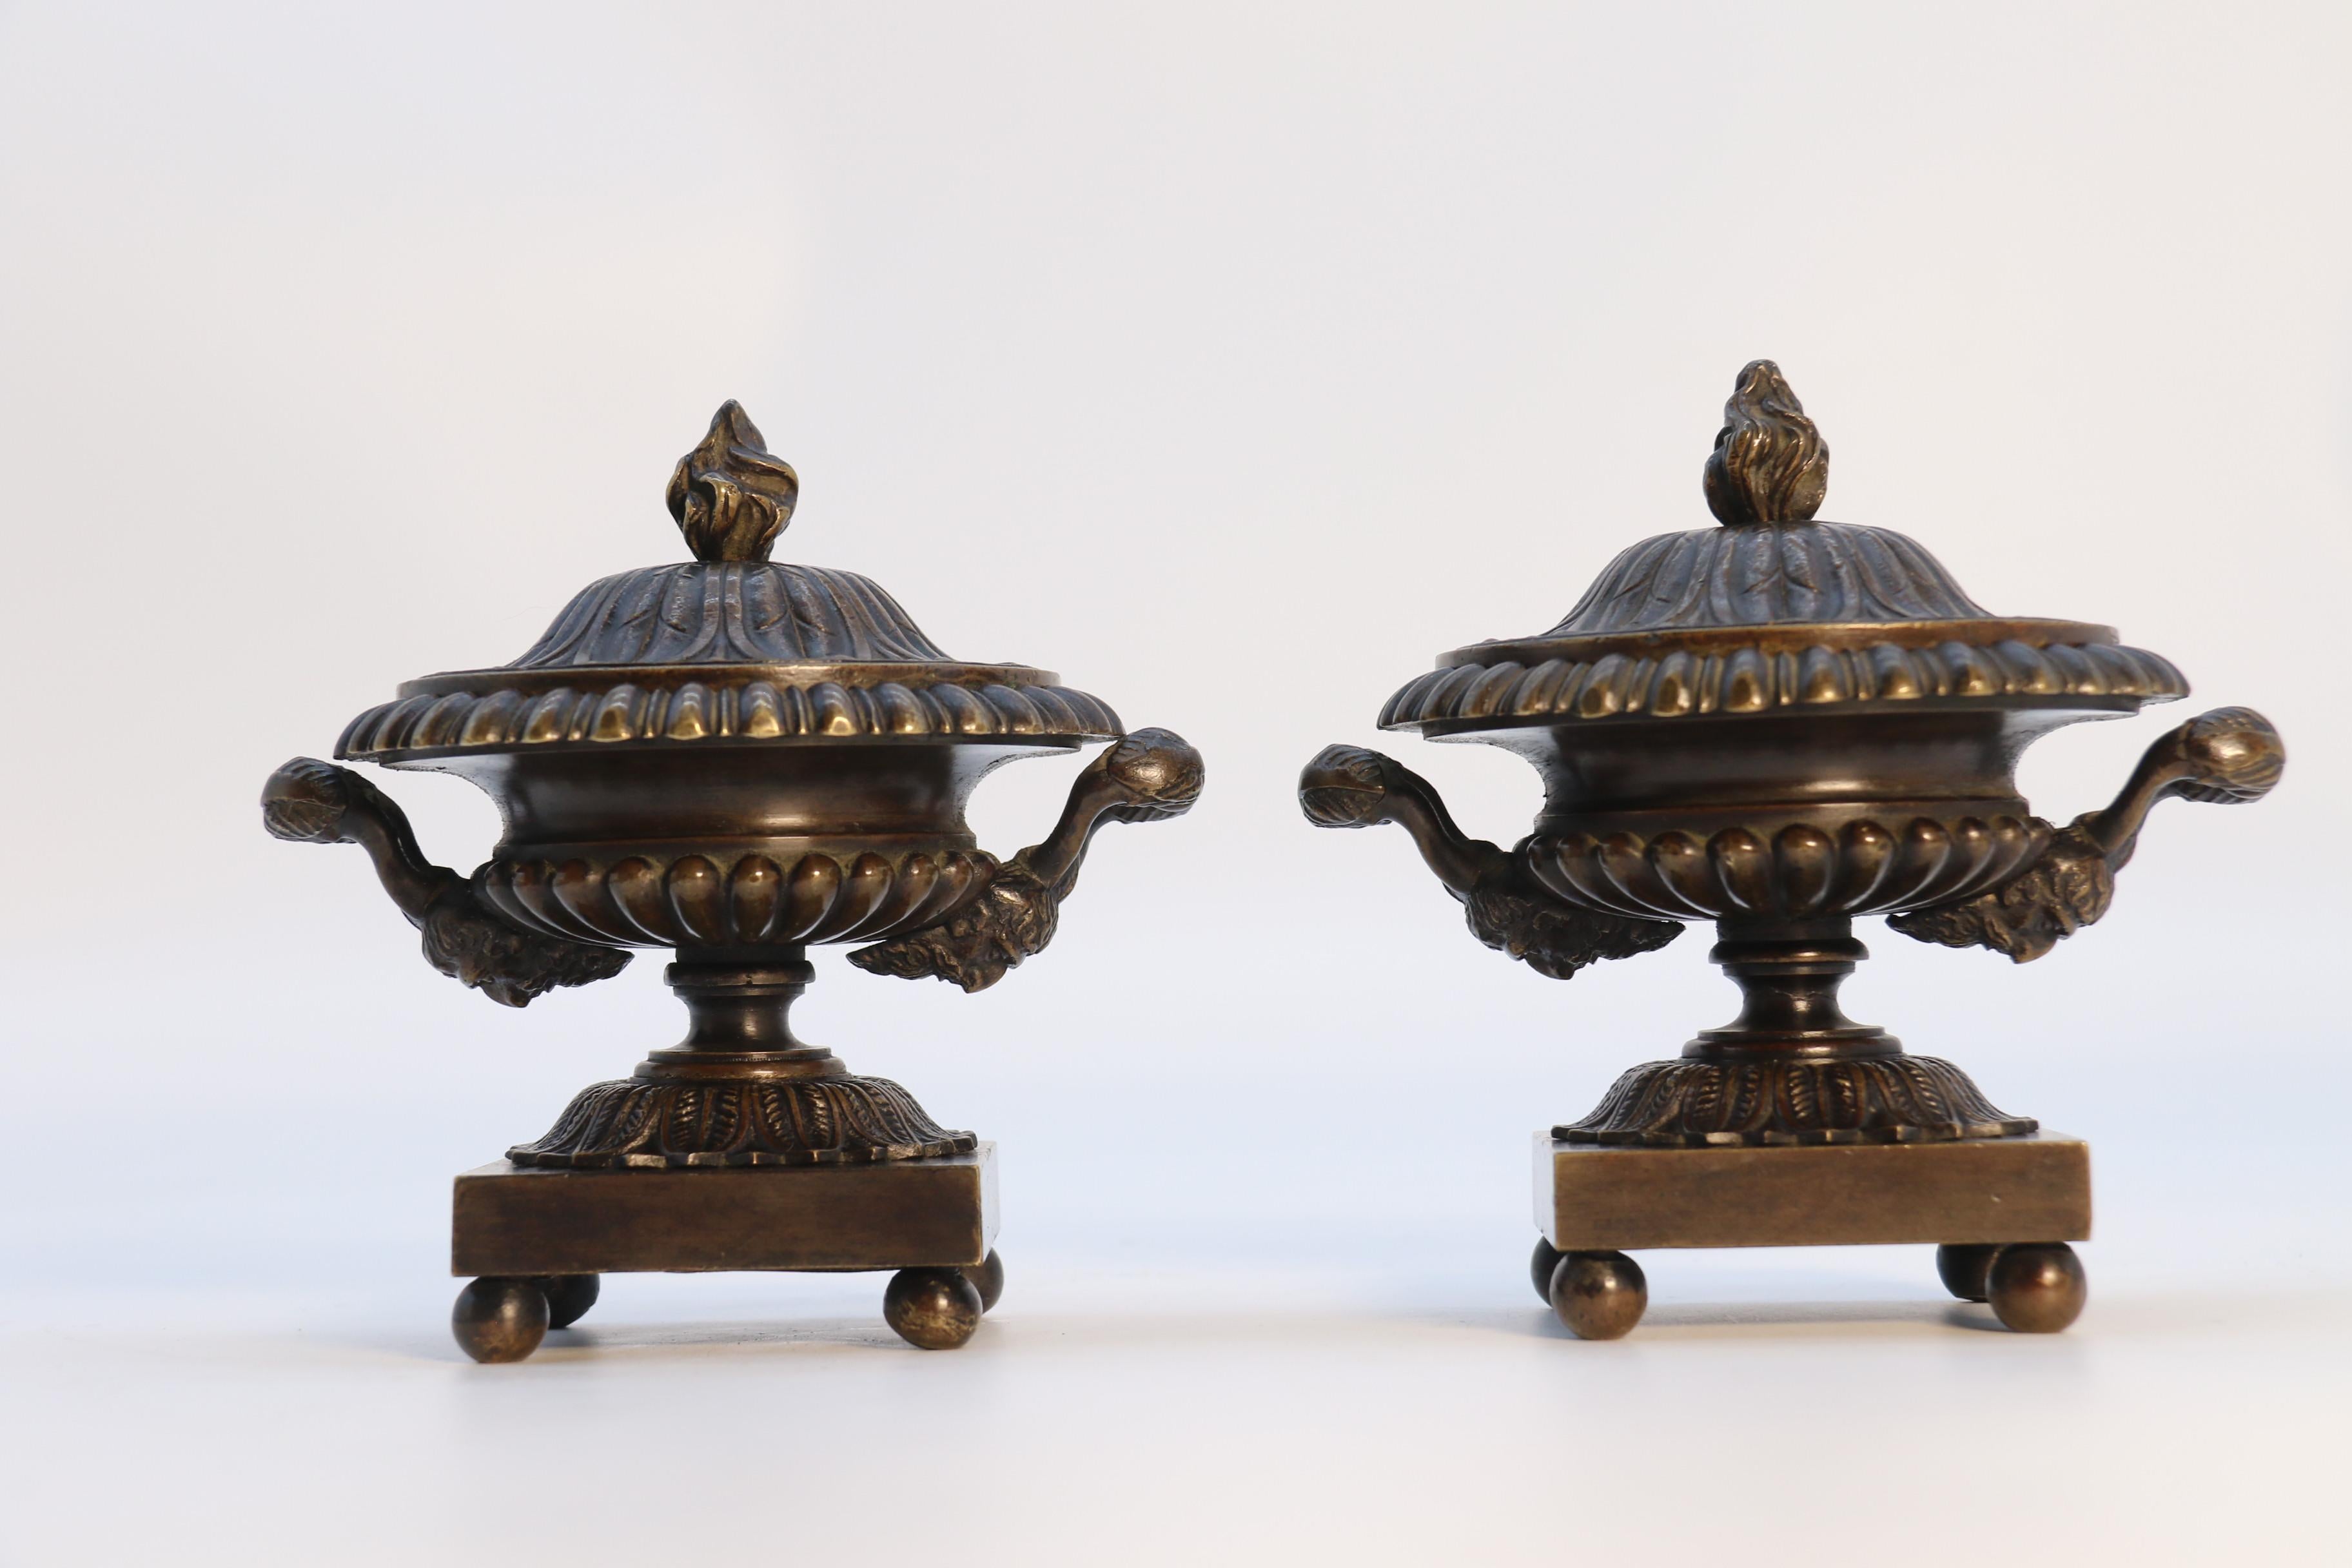 Cette paire très élégante d'urnes en bronze classique de la période Regency anglaise est de petites proportions et d'un design très élégant et sophistiqué. Ils reposent sur des bases carrées simples qui sont soulevées par quatre petits pieds en